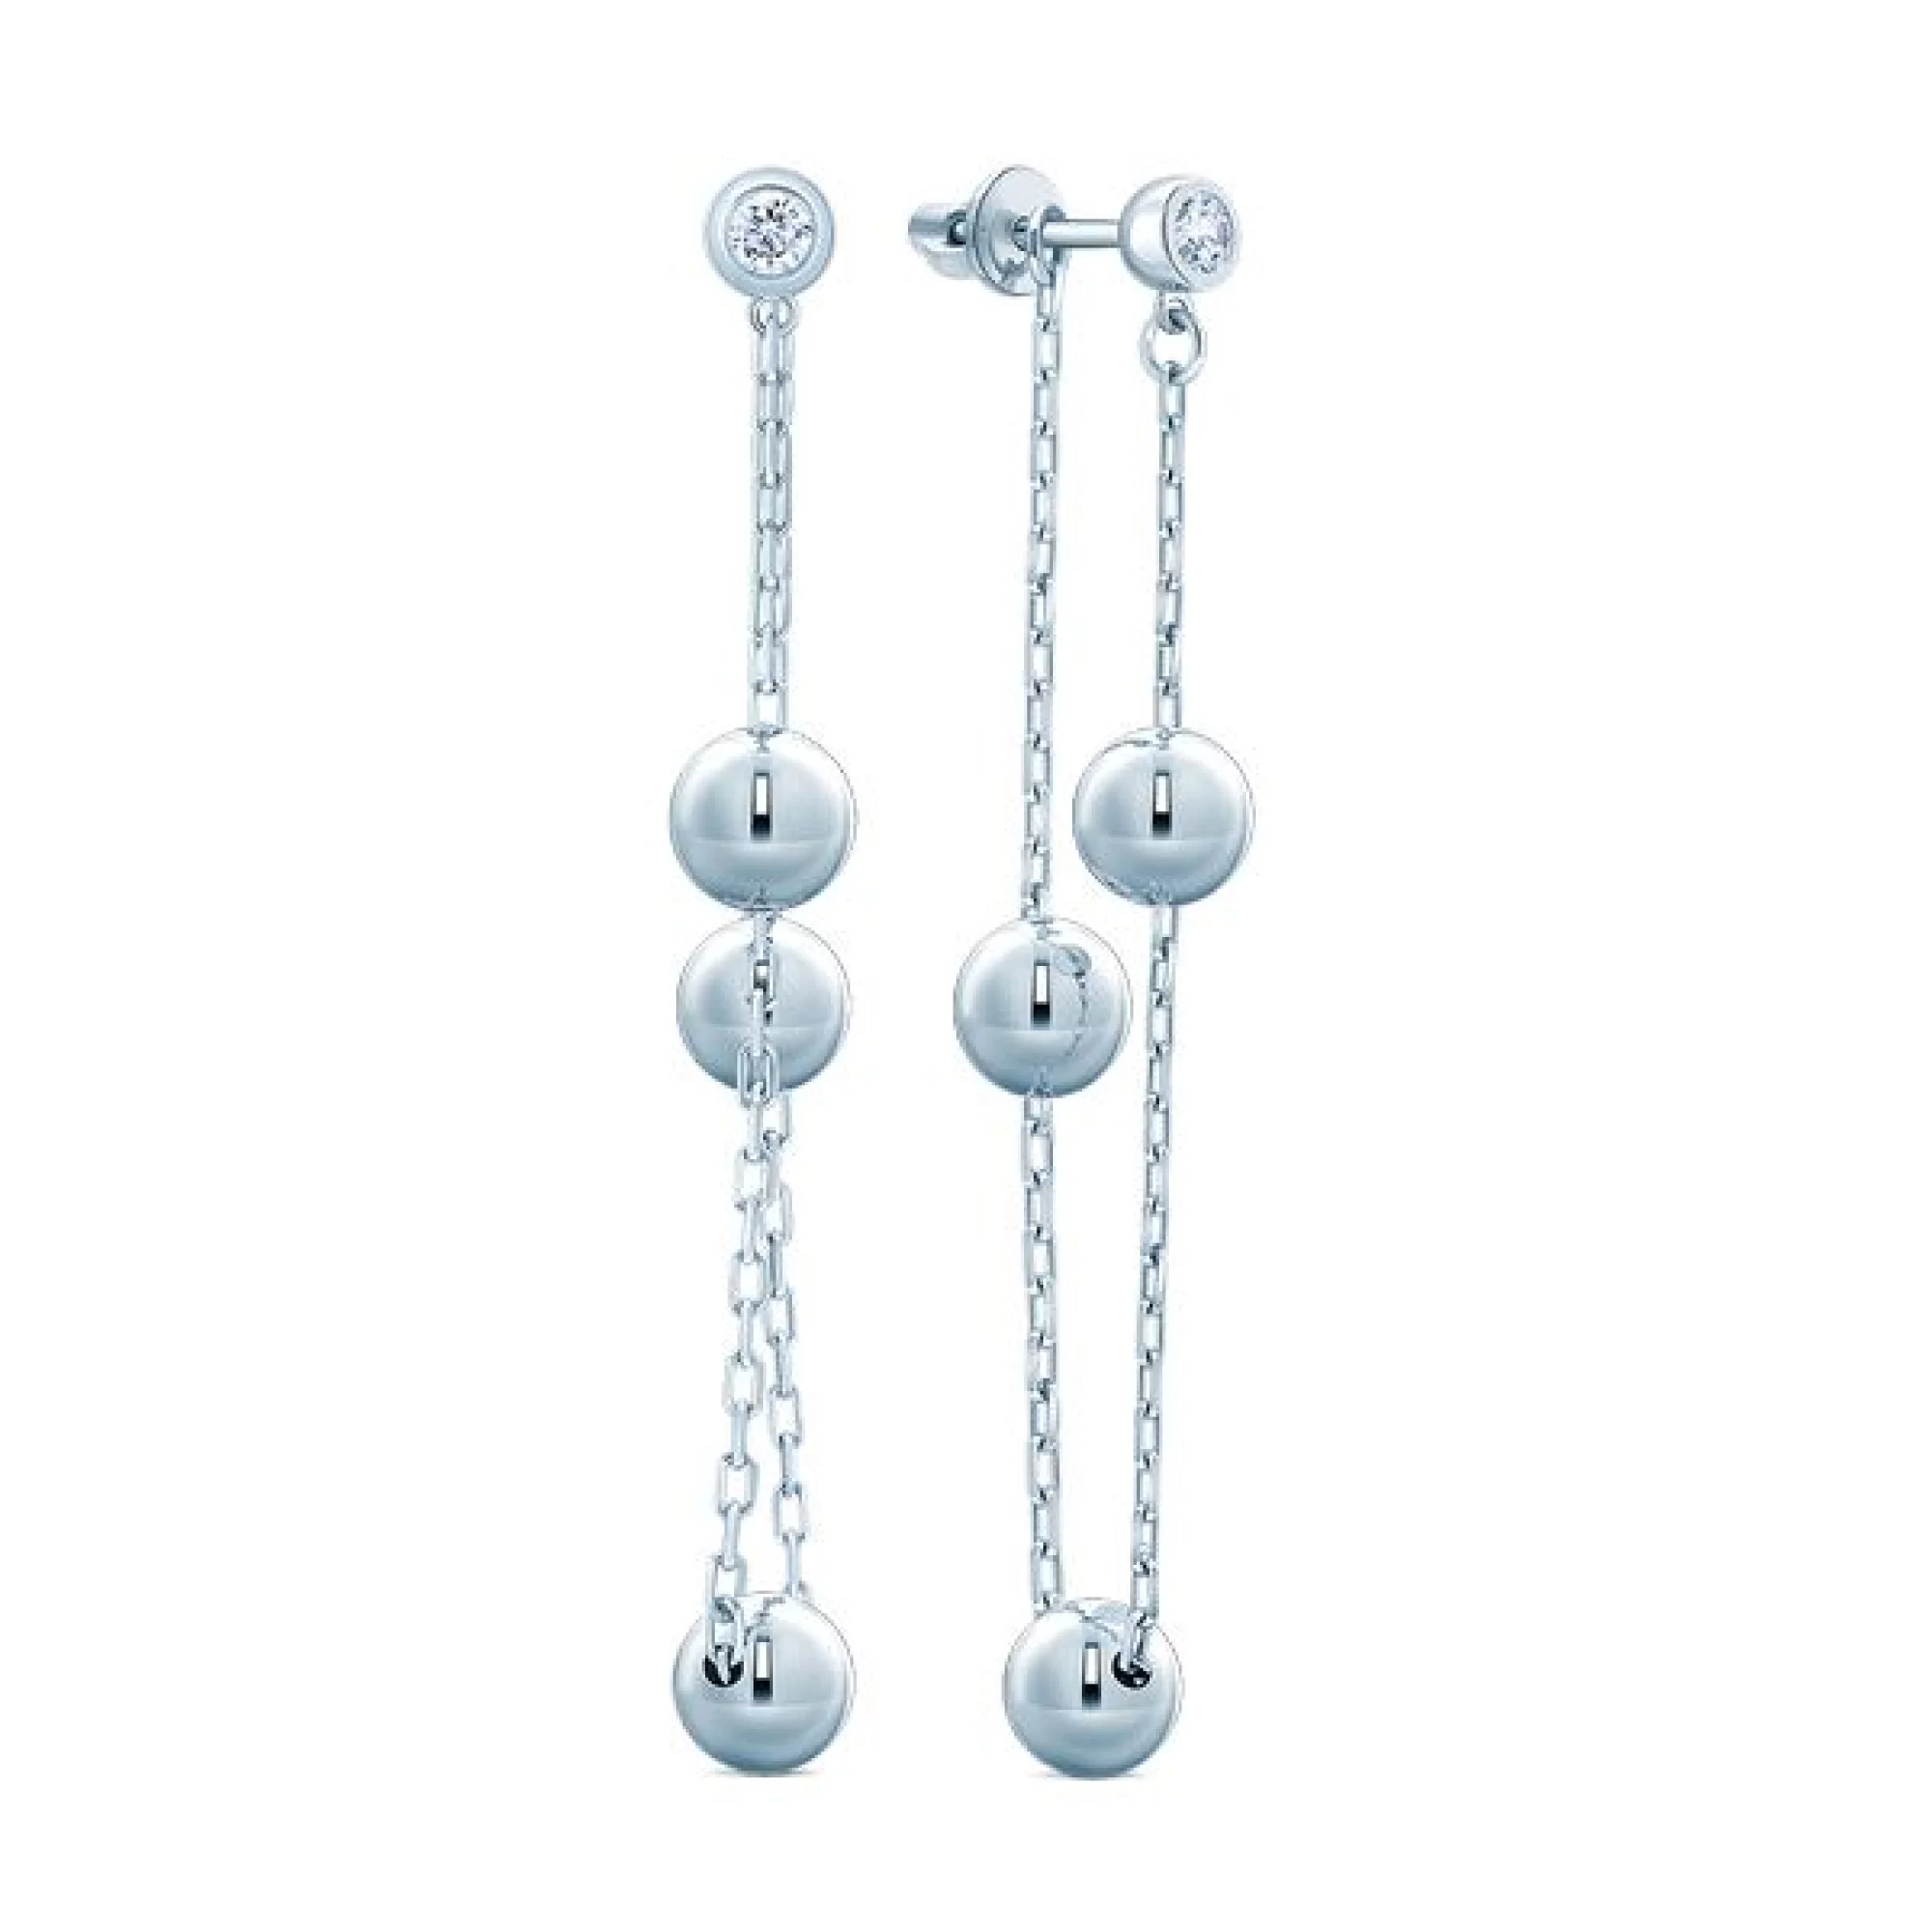 Срібні сережки-гвоздики з цирконієм - 409922 – зображення 1